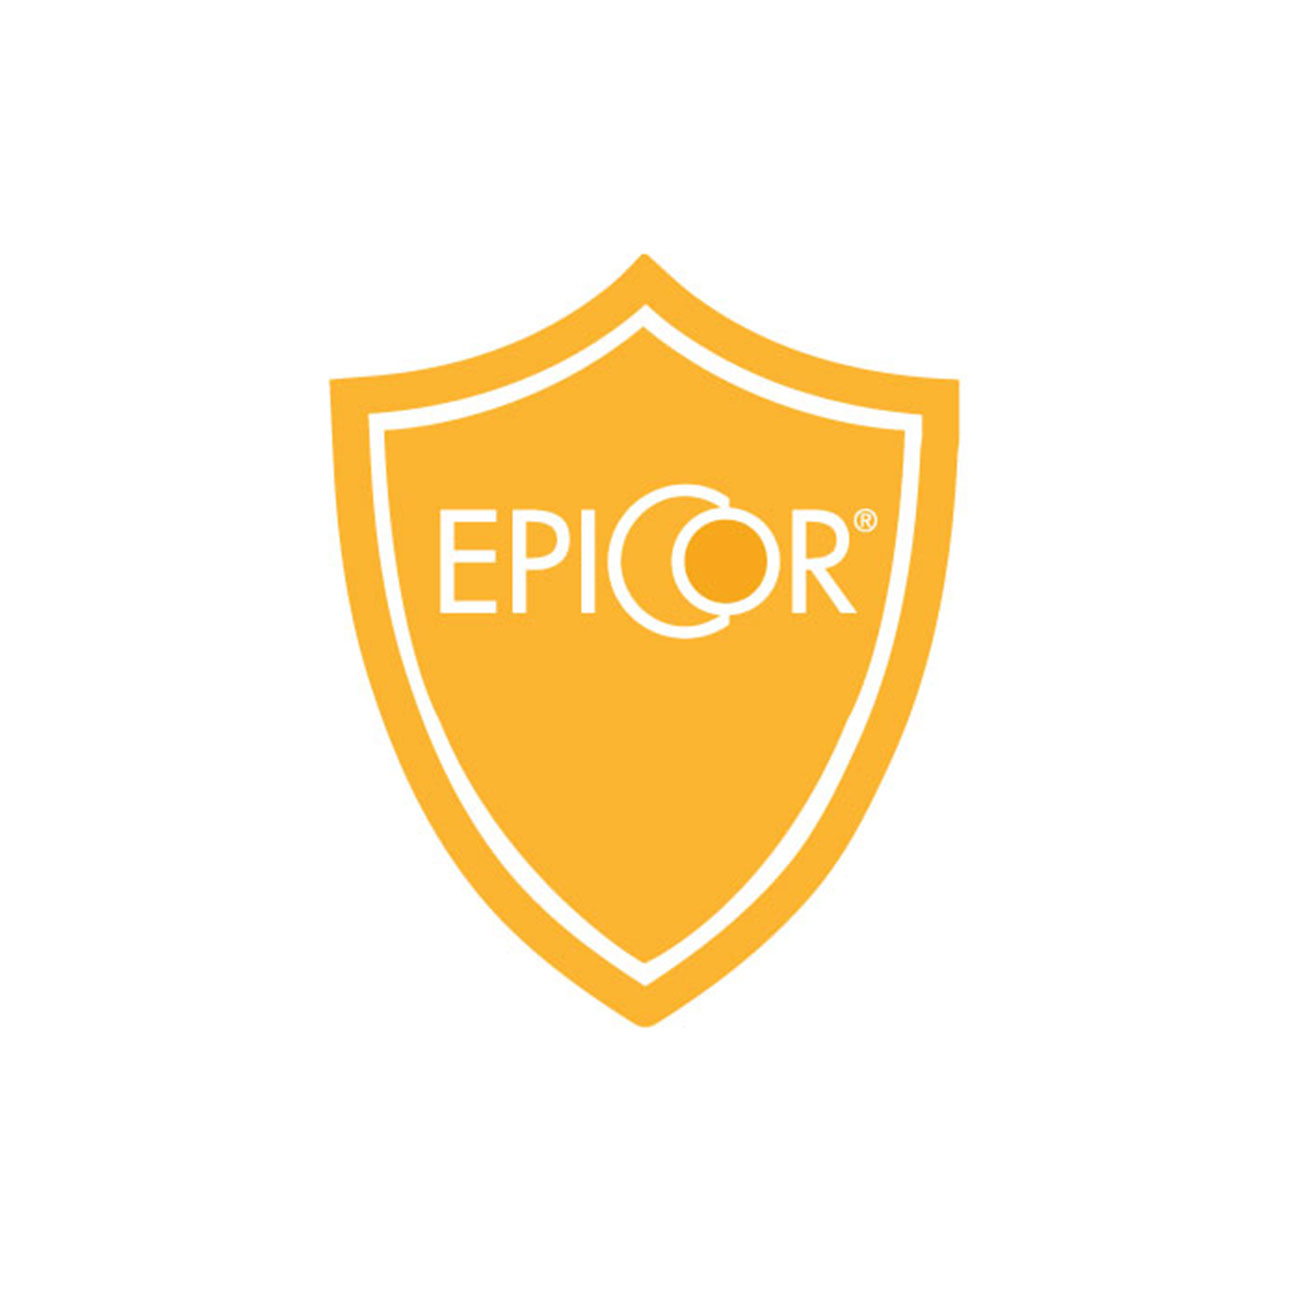 EpiCor® - naturalny składnik suplementu diety wspierający zdrowie układu odpornościowego - logo